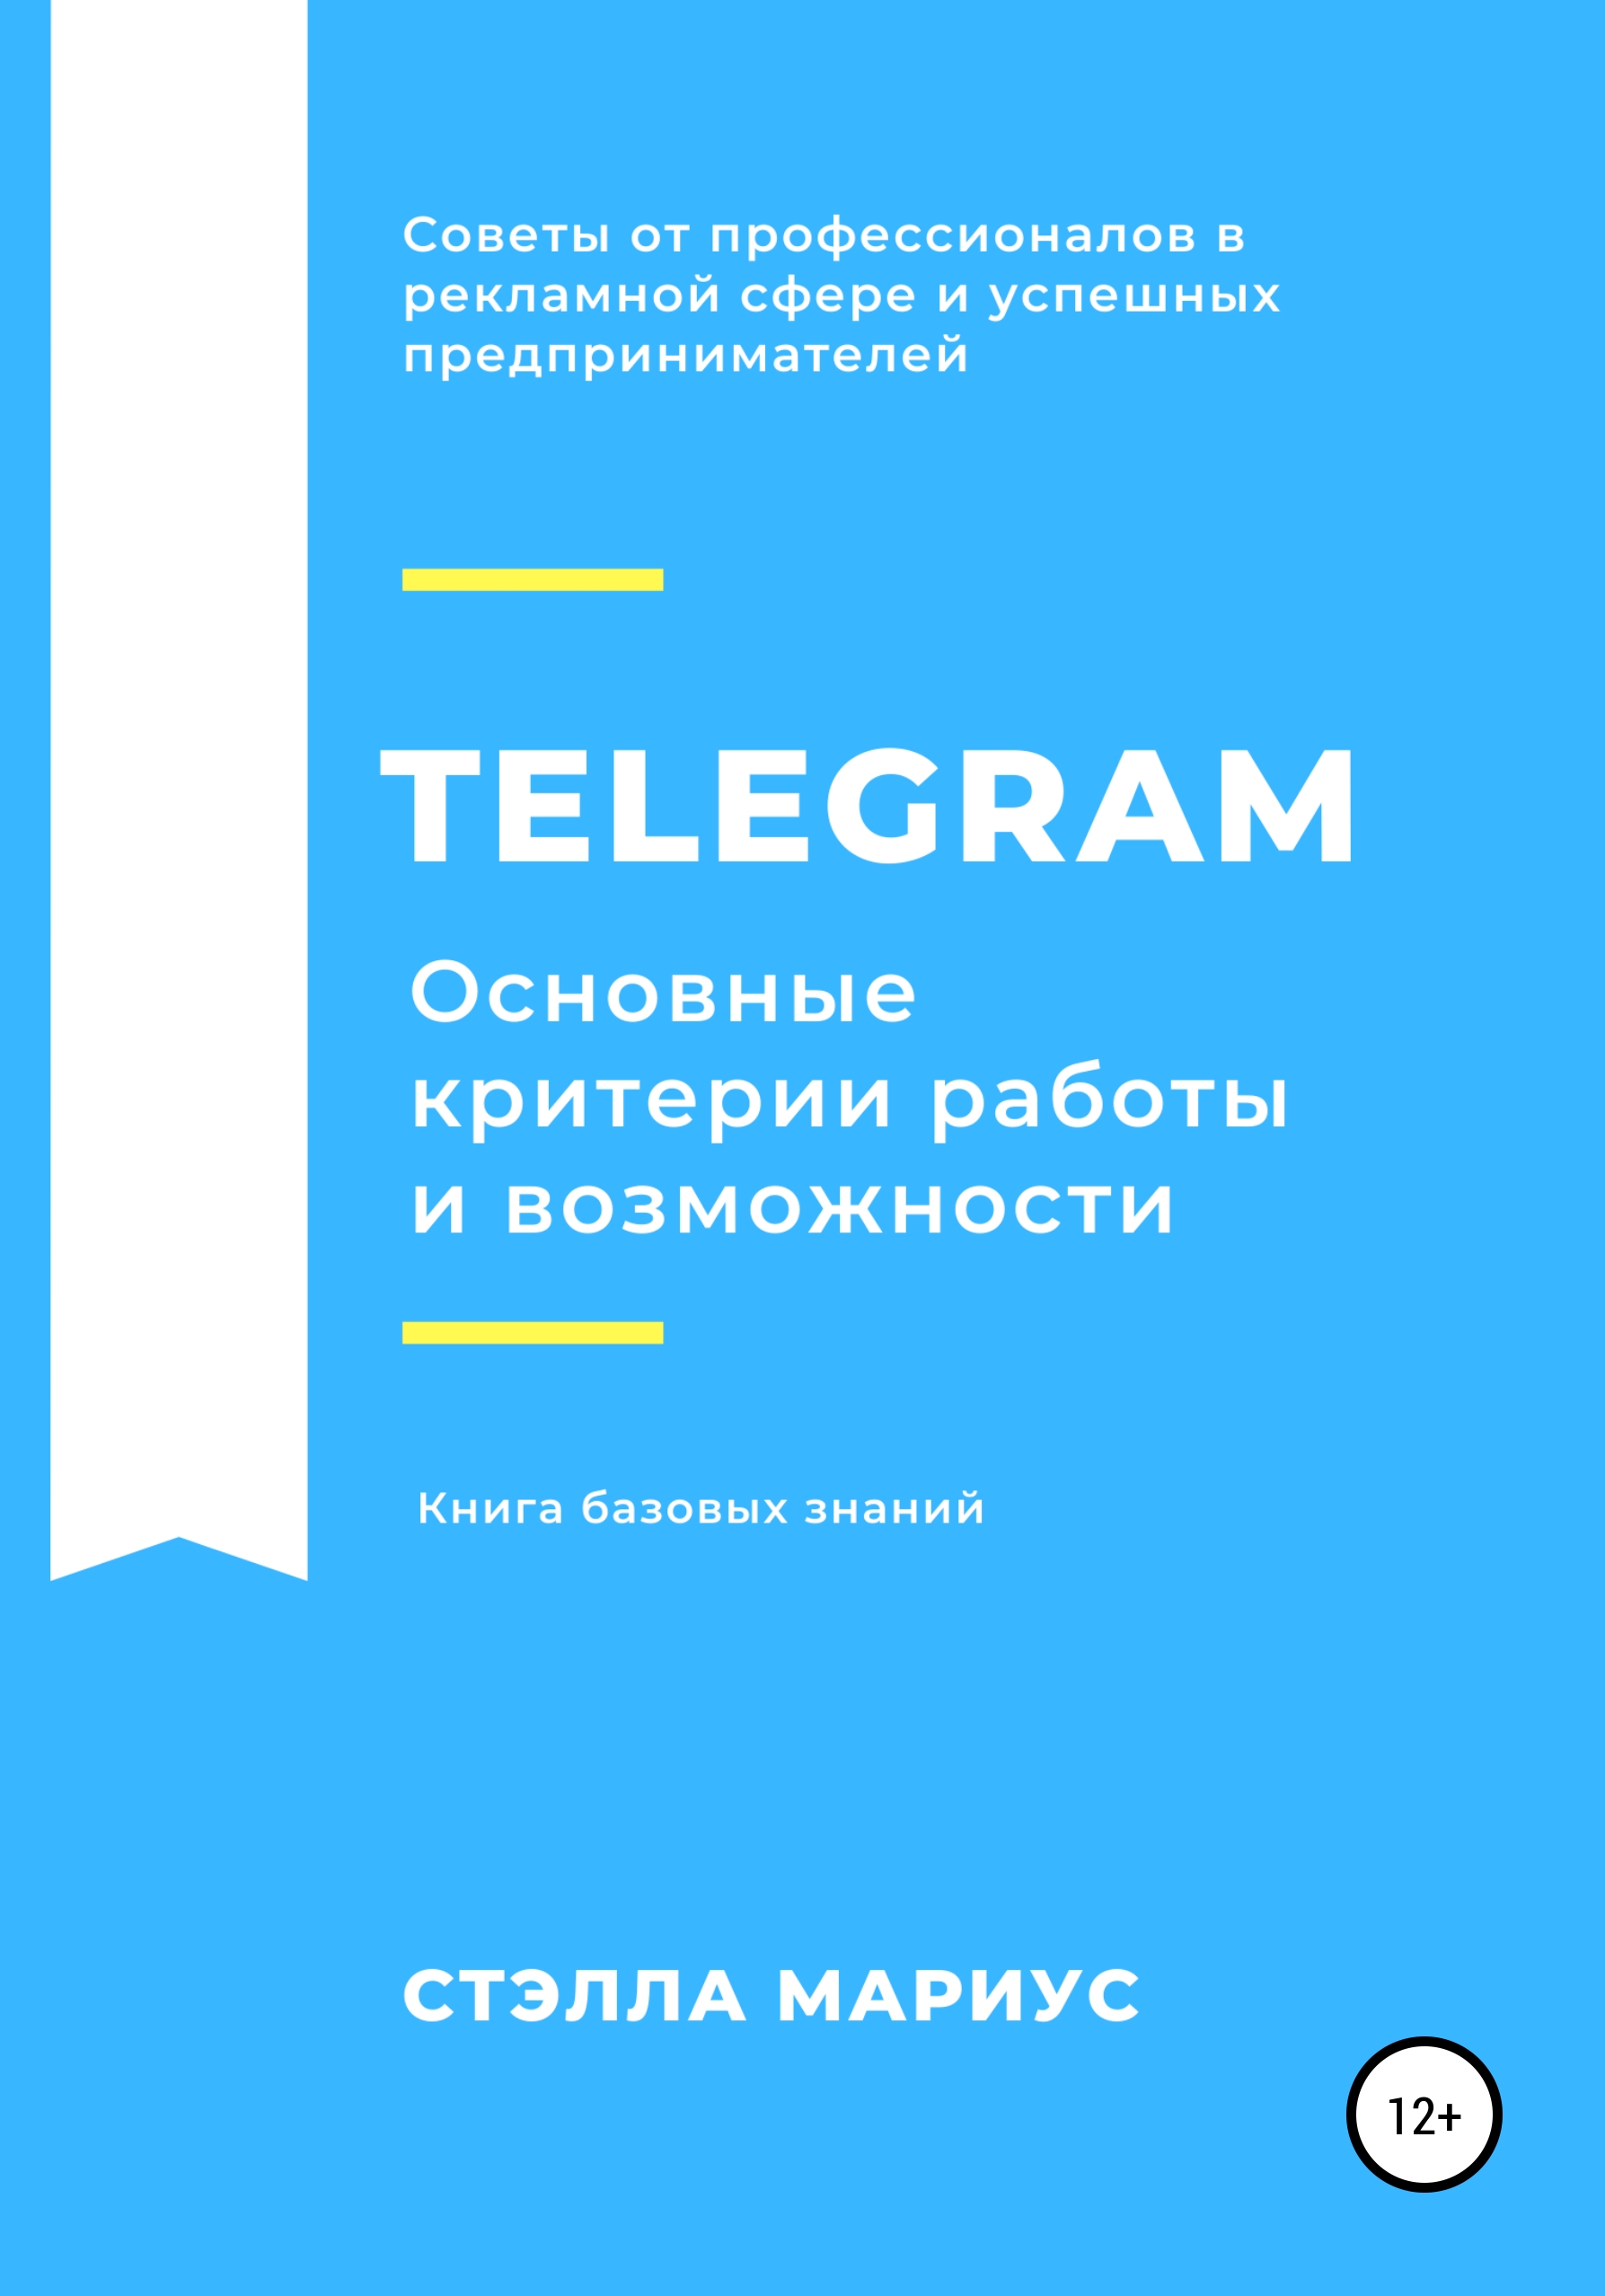 Книга  Telegram. Основные критерии работы и возможности созданная Стэлла Мариус может относится к жанру интернет, интернет-бизнес, интернет-маркетинг. Стоимость электронной книги Telegram. Основные критерии работы и возможности с идентификатором 63262342 составляет 149.00 руб.